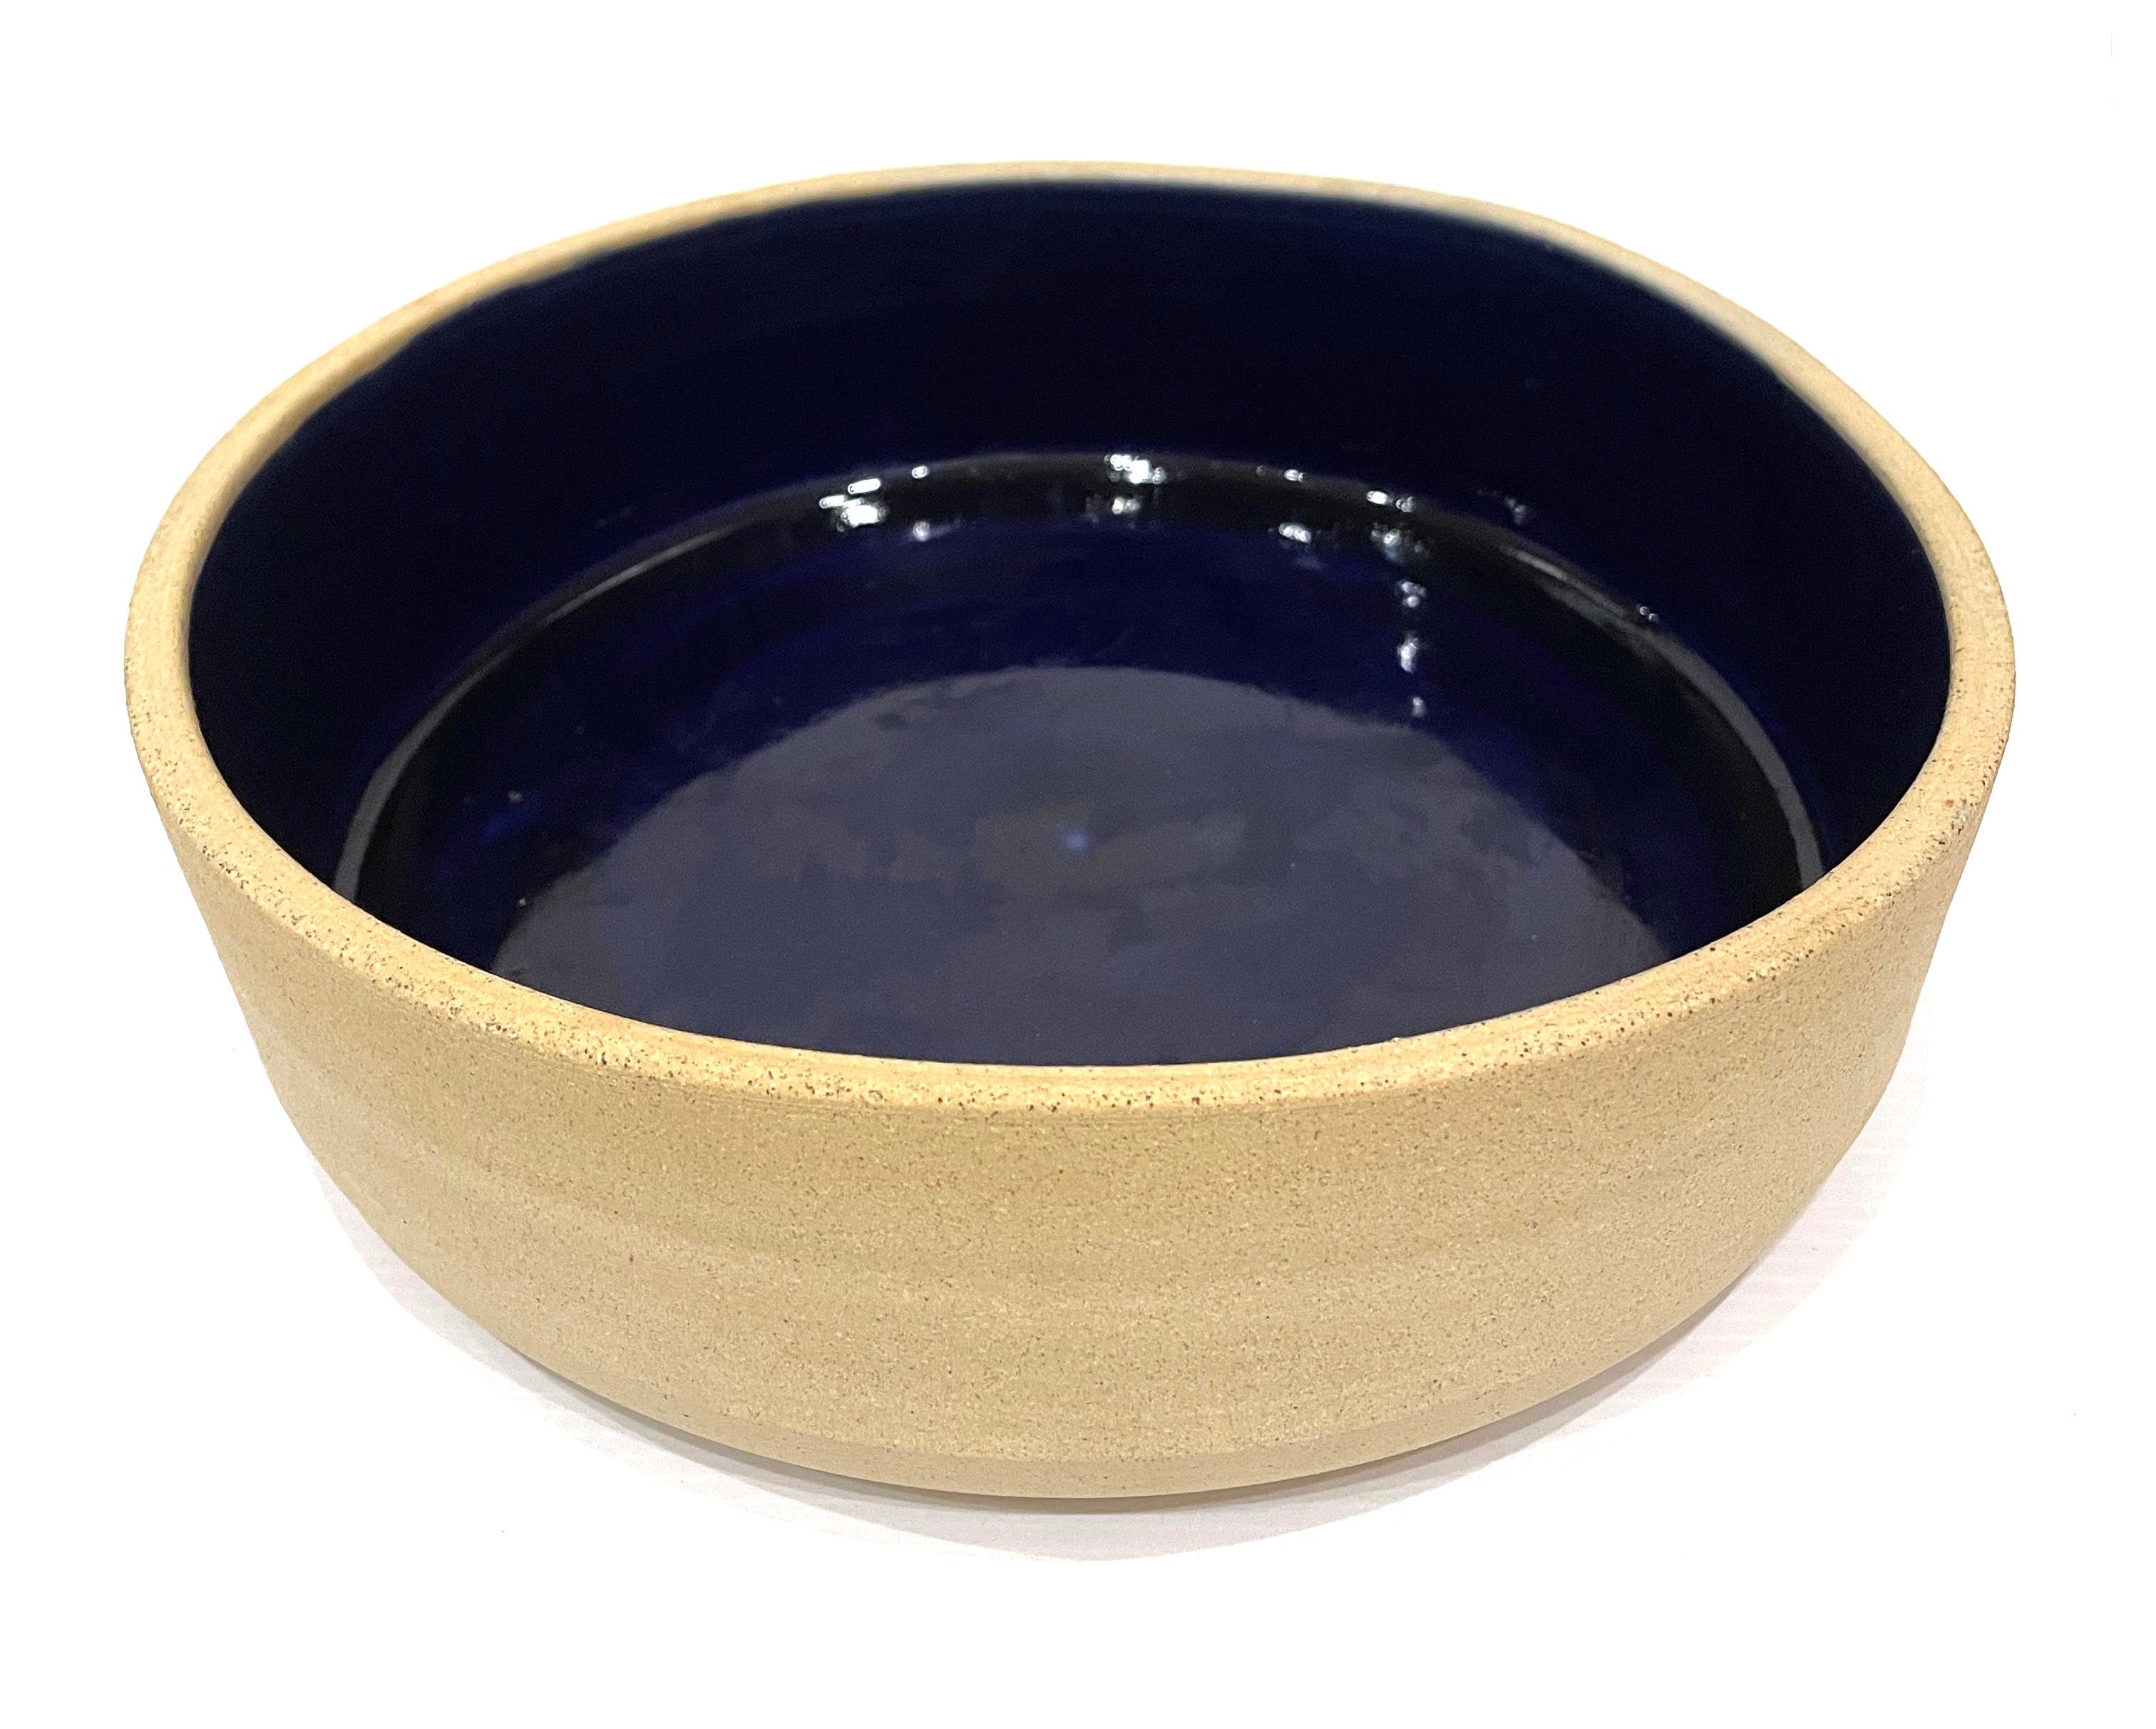 Handmade ceramic pet dog bowls